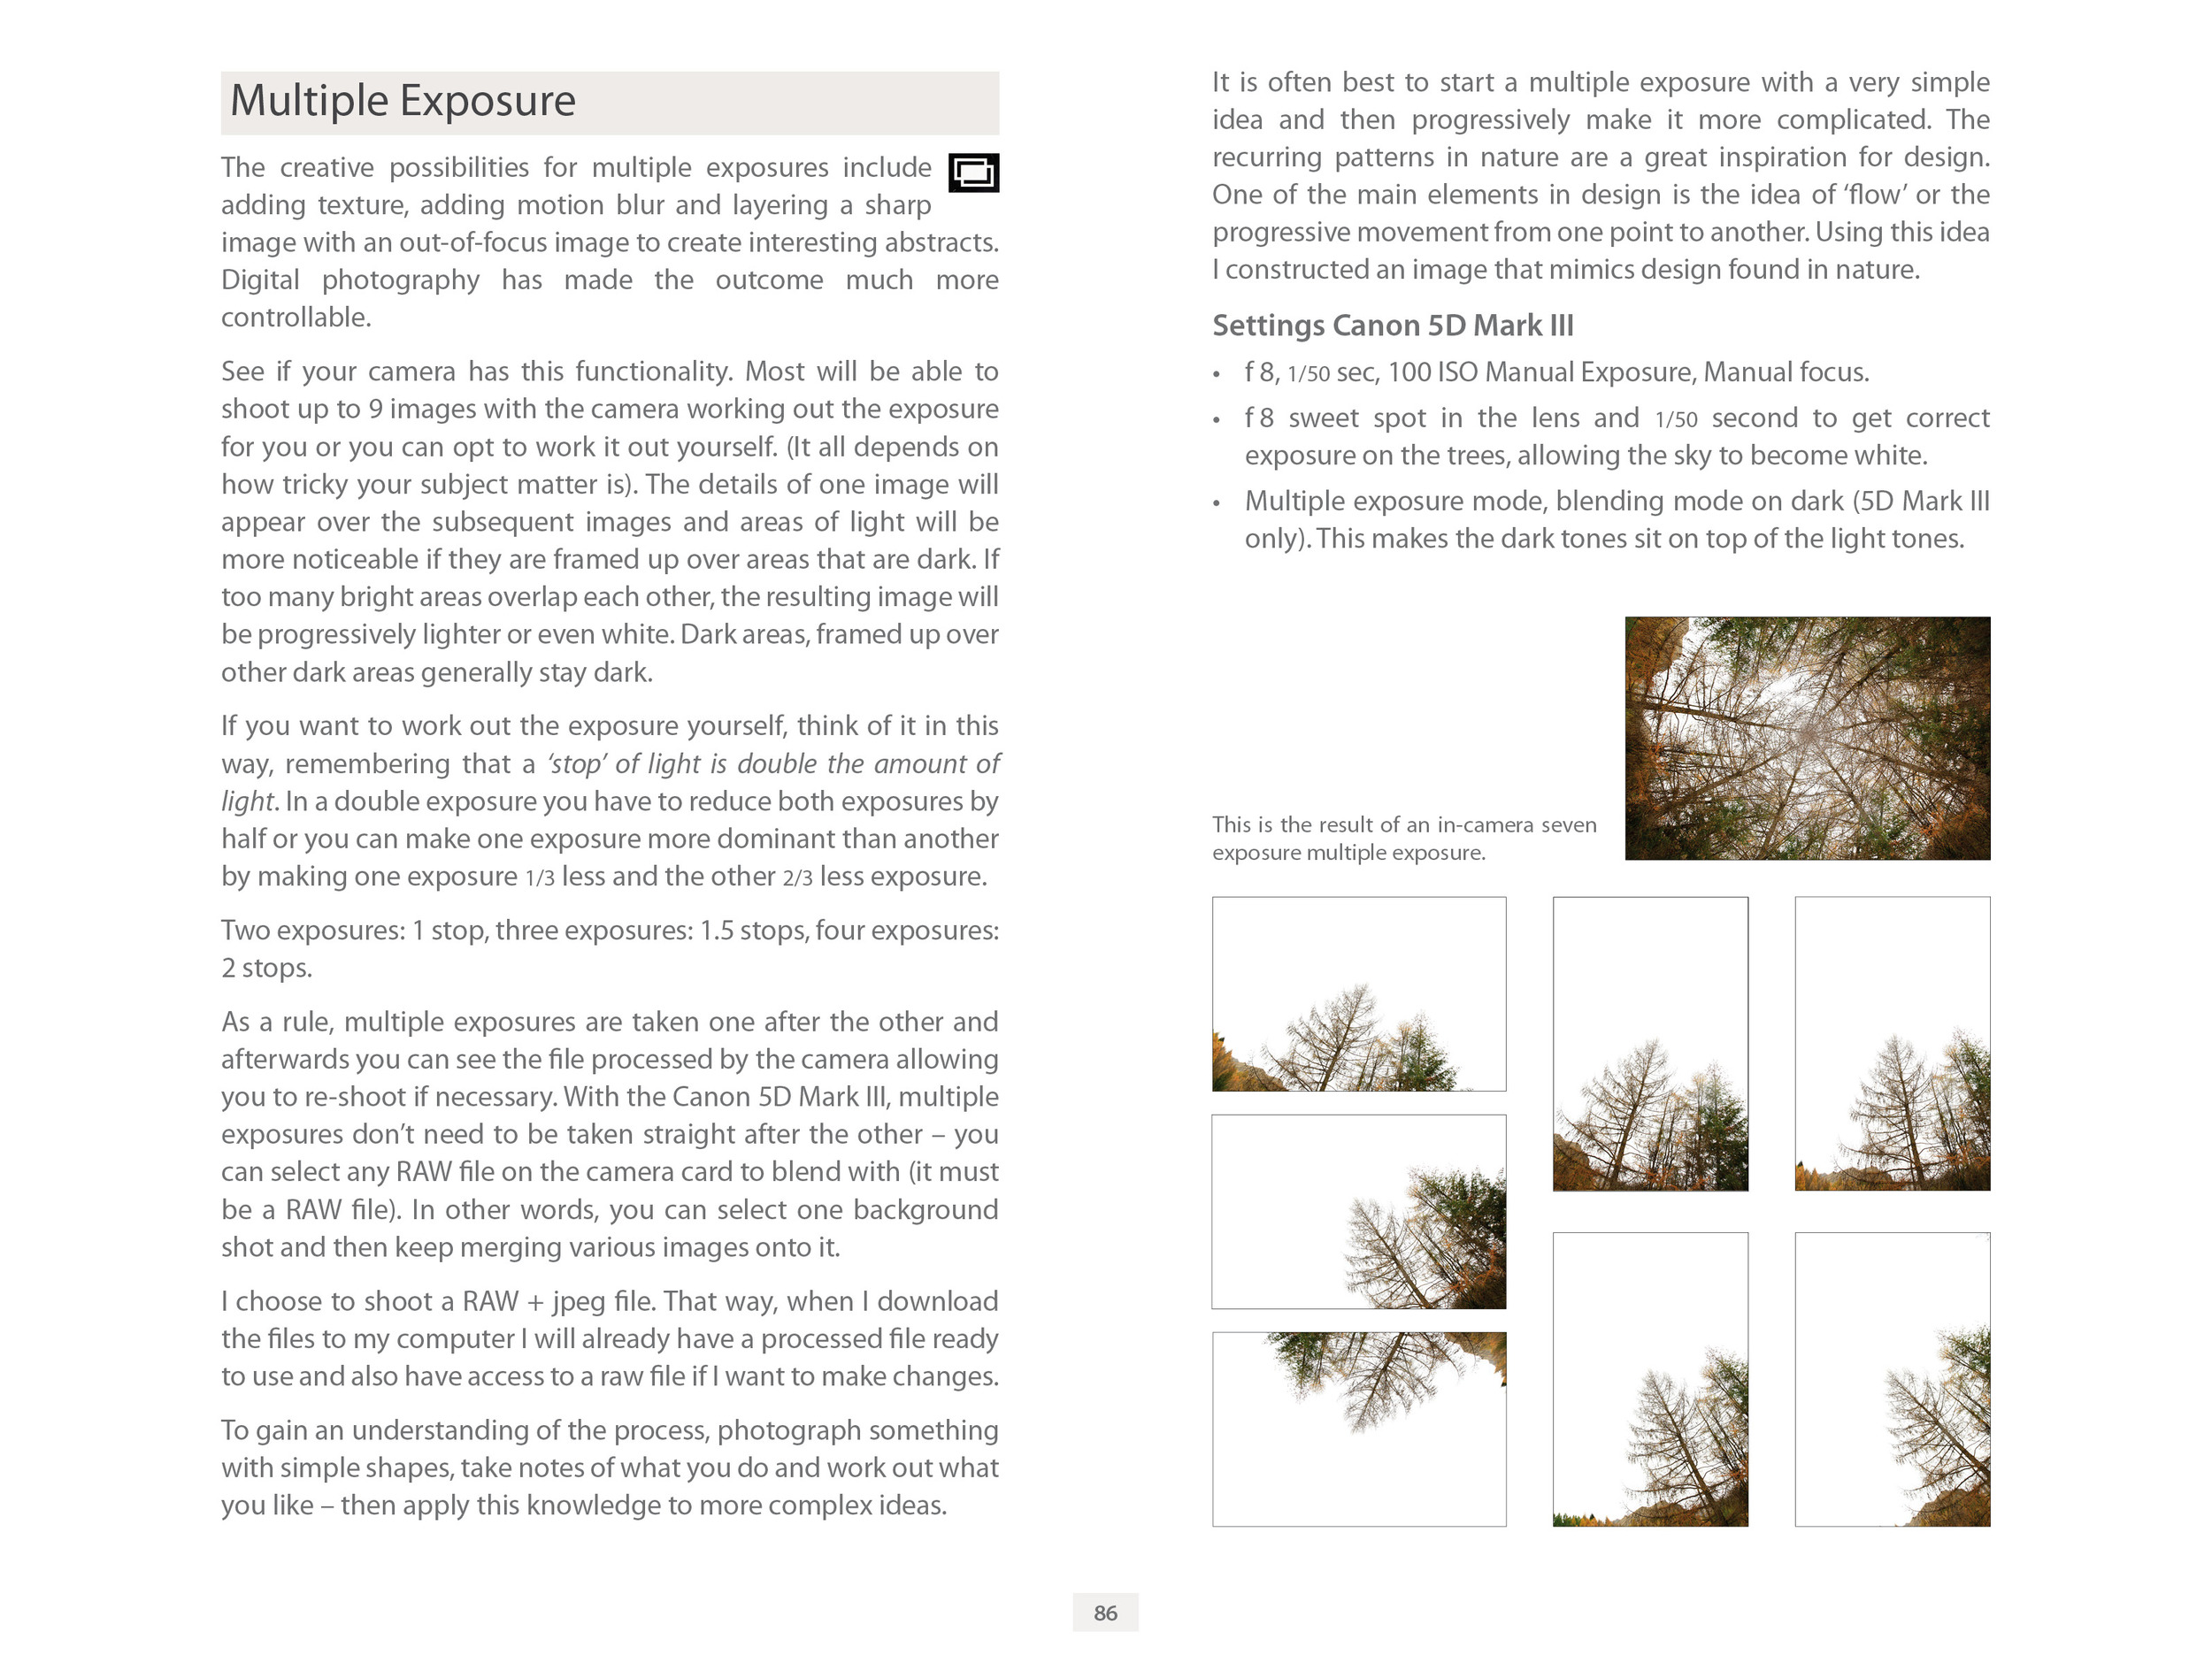 LG2 ebook for Flatbooks p 86 Multiple Exposure.jpg